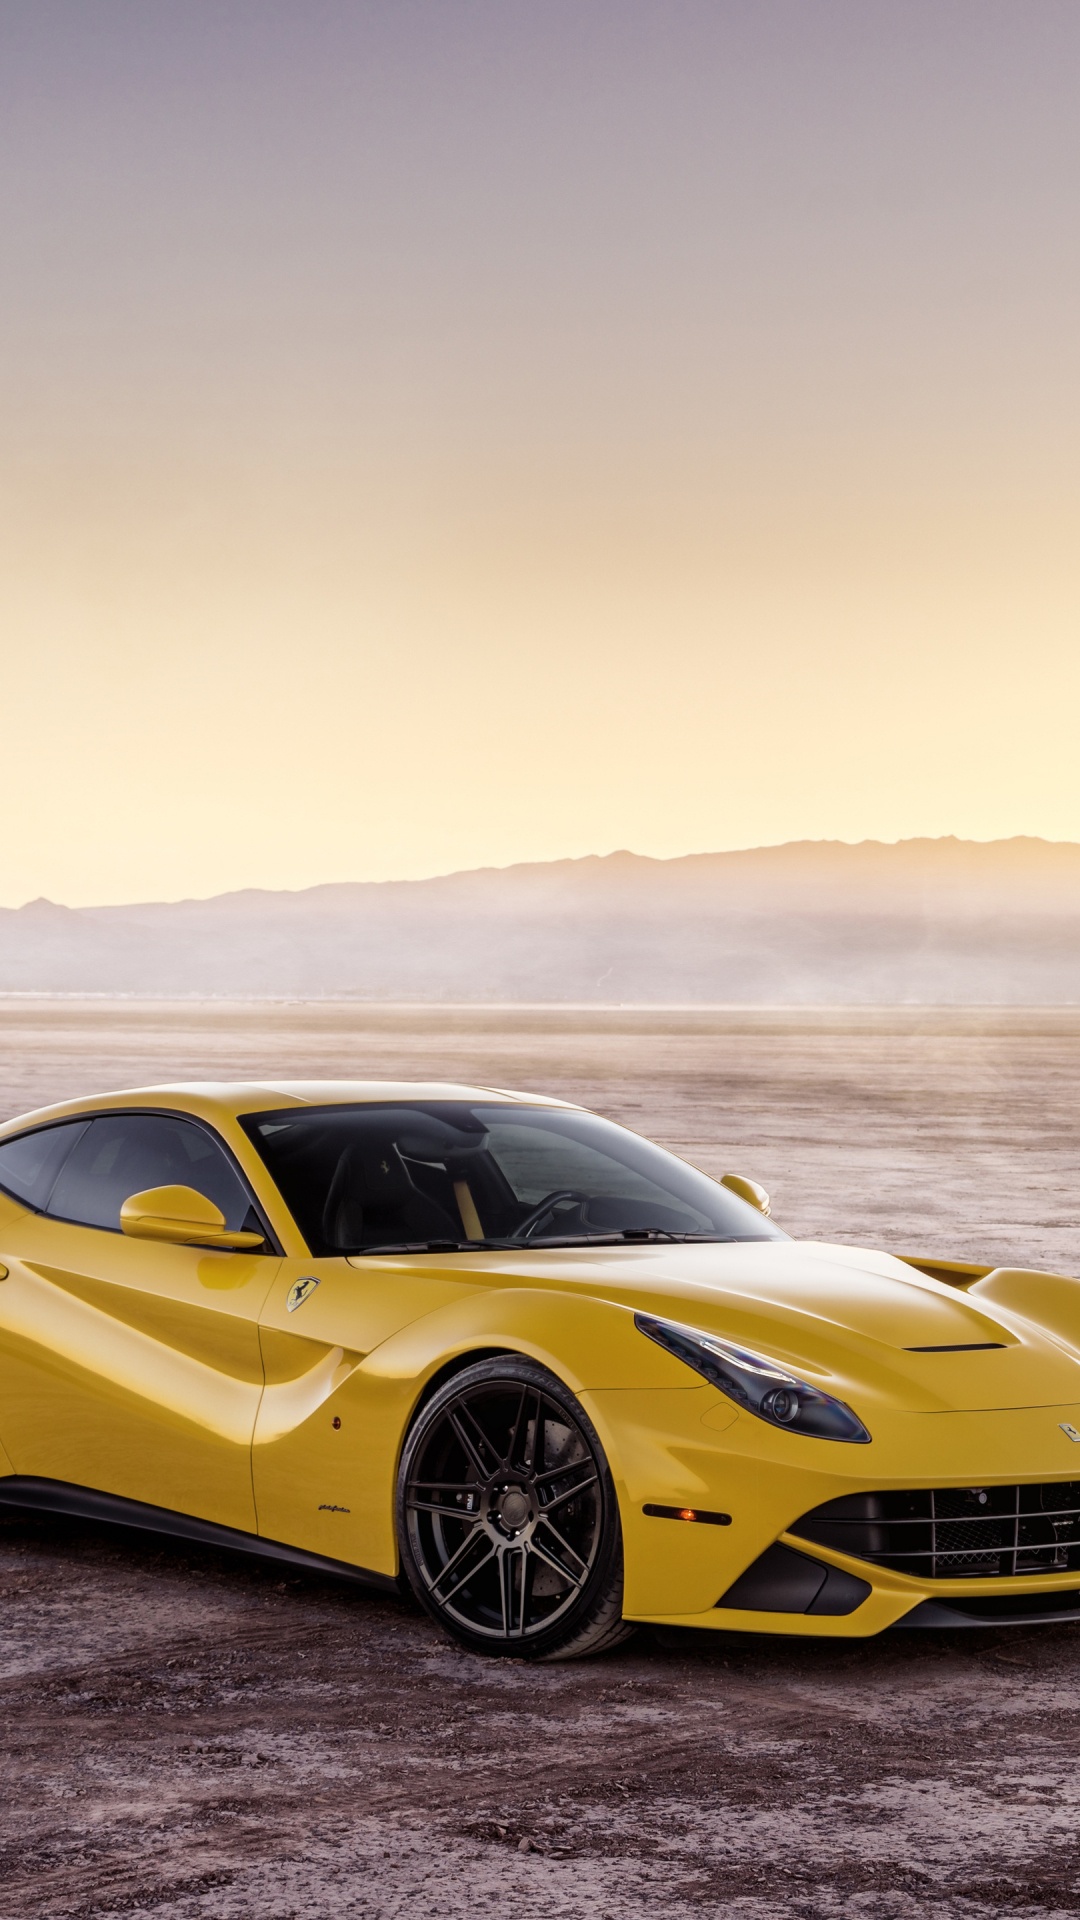 Ferrari, 超级跑车, 黄色的, 法拉利的加利福尼亚州, 法拉利fxx 壁纸 1080x1920 允许